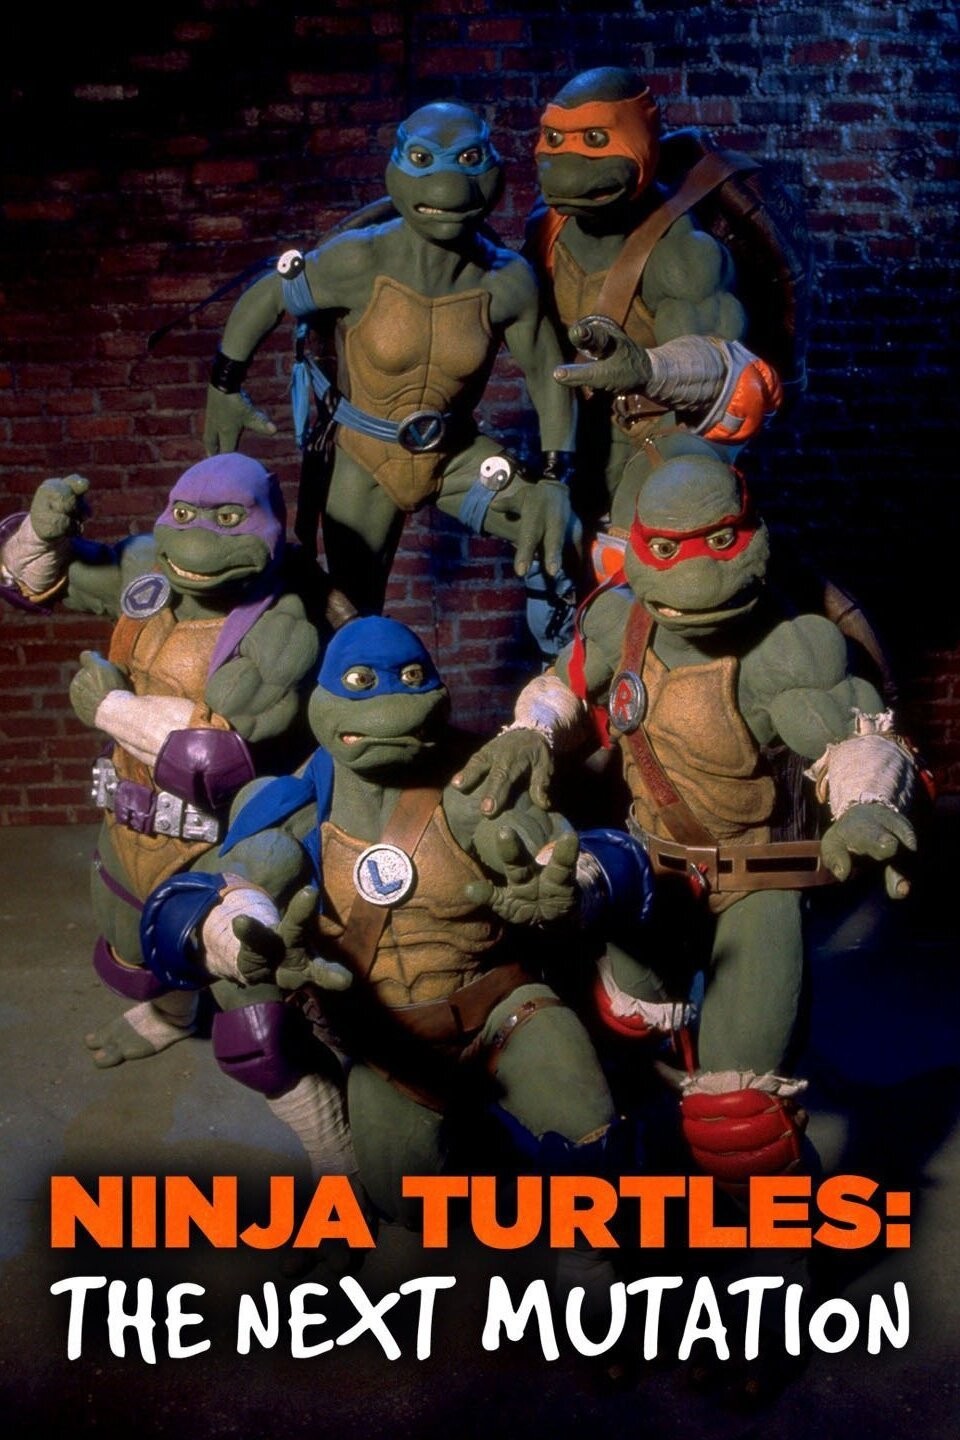 Teenage Mutant Ninja Turtles confirmed to be Black teenagers in their human  form